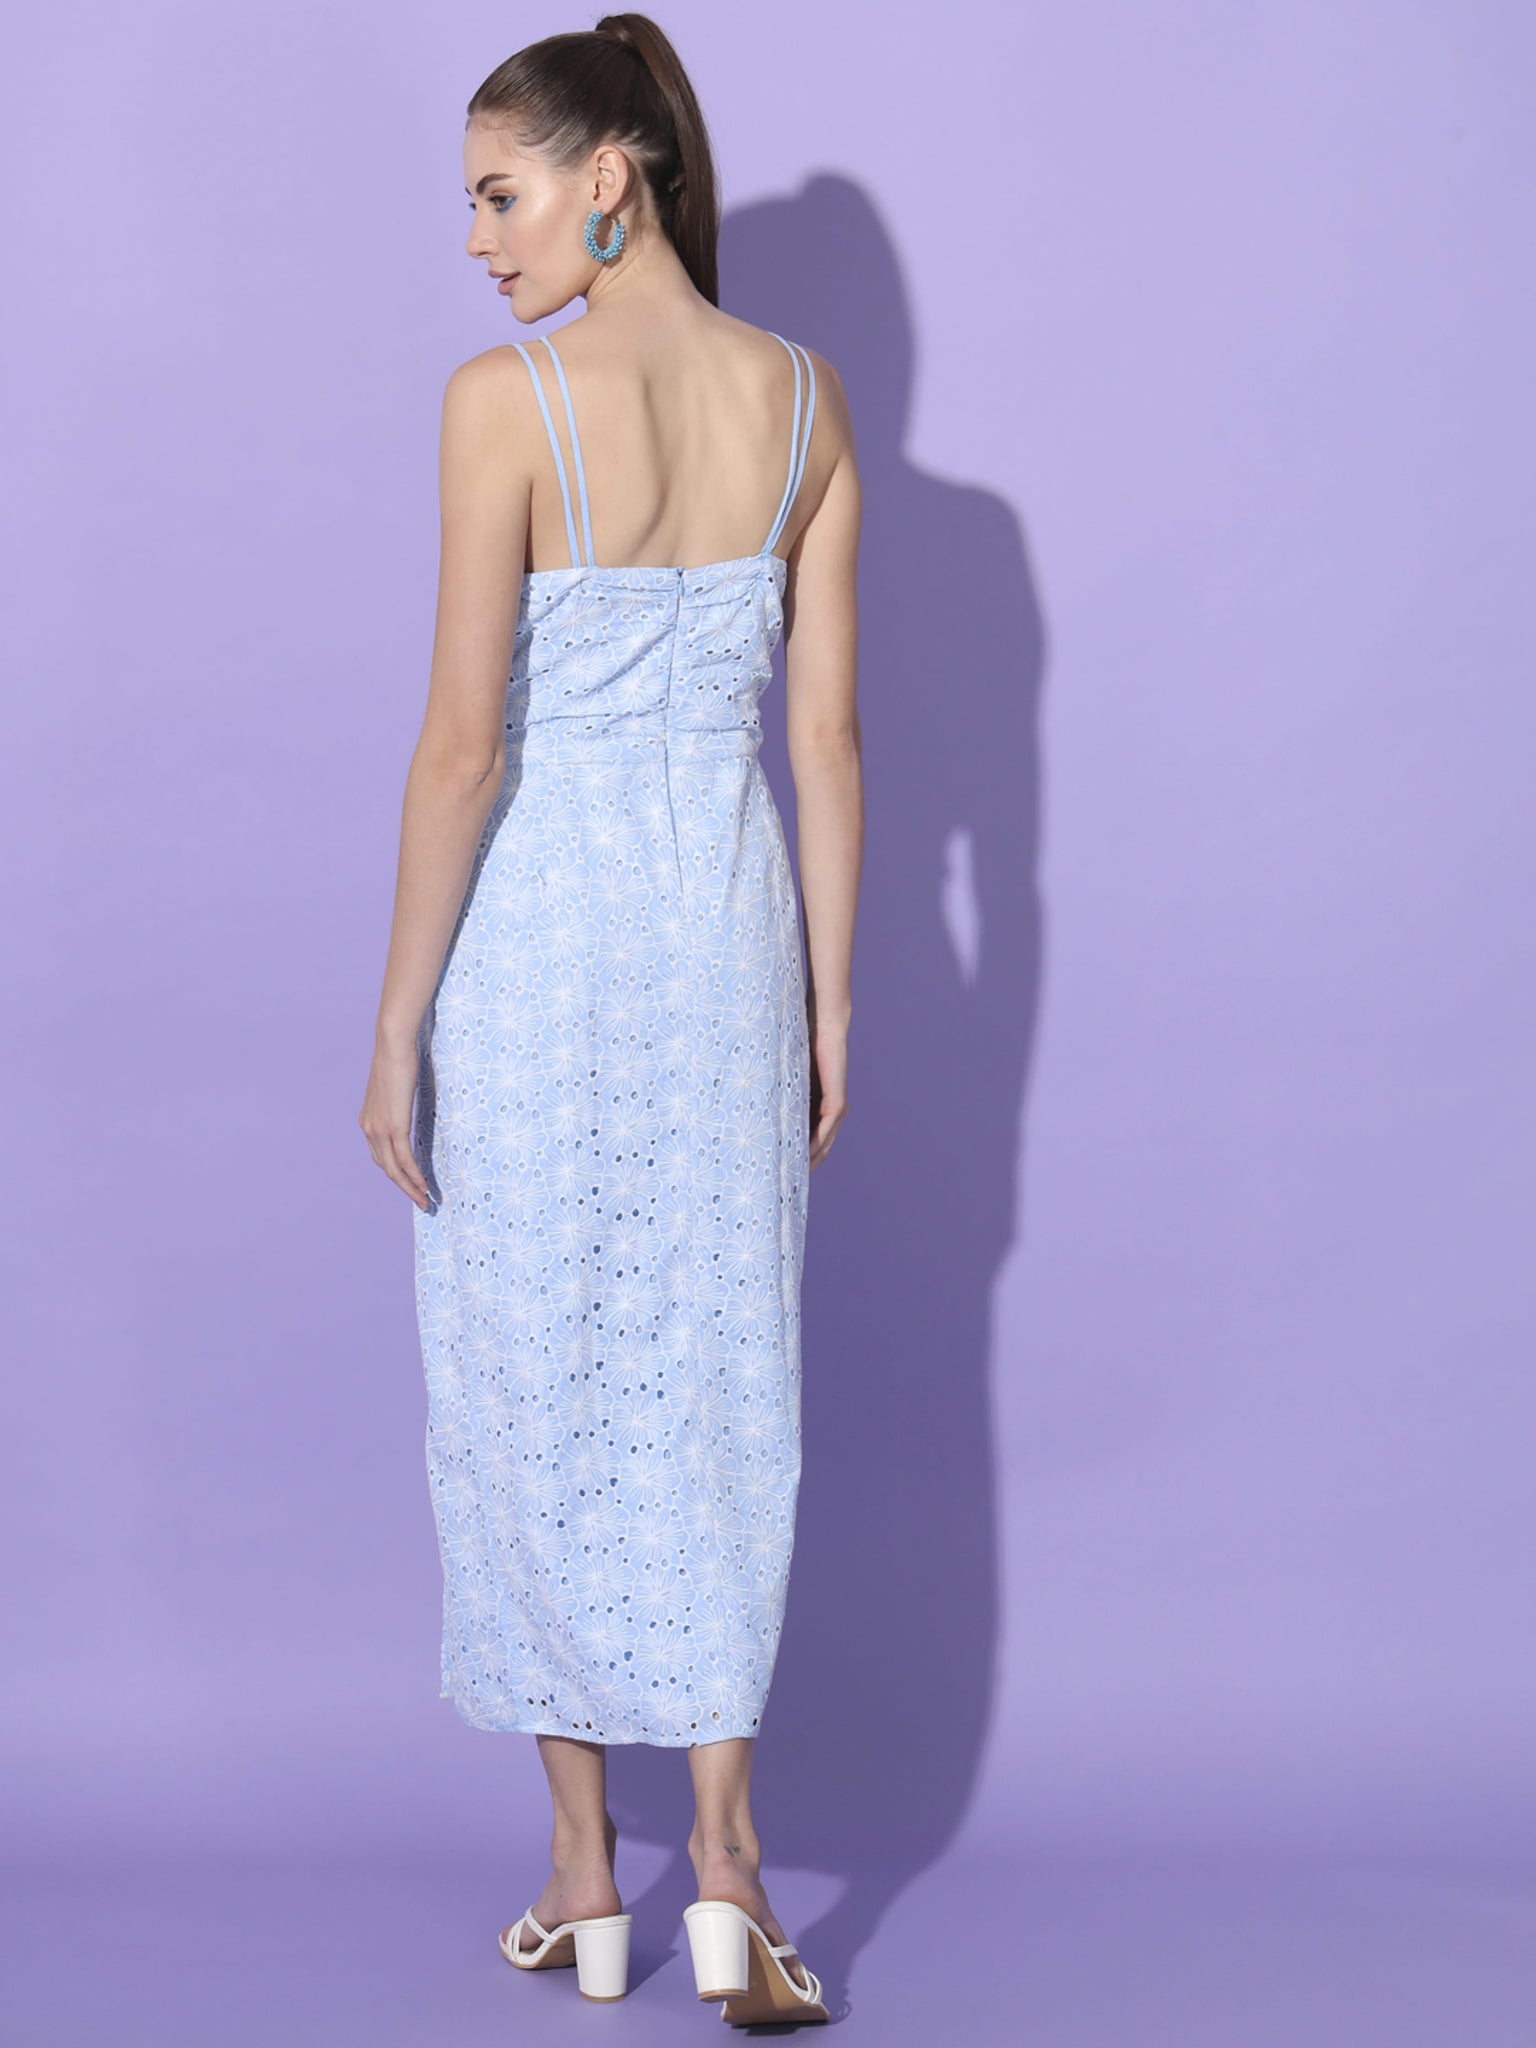 Elegance in Blue: Cotton Designer Dress